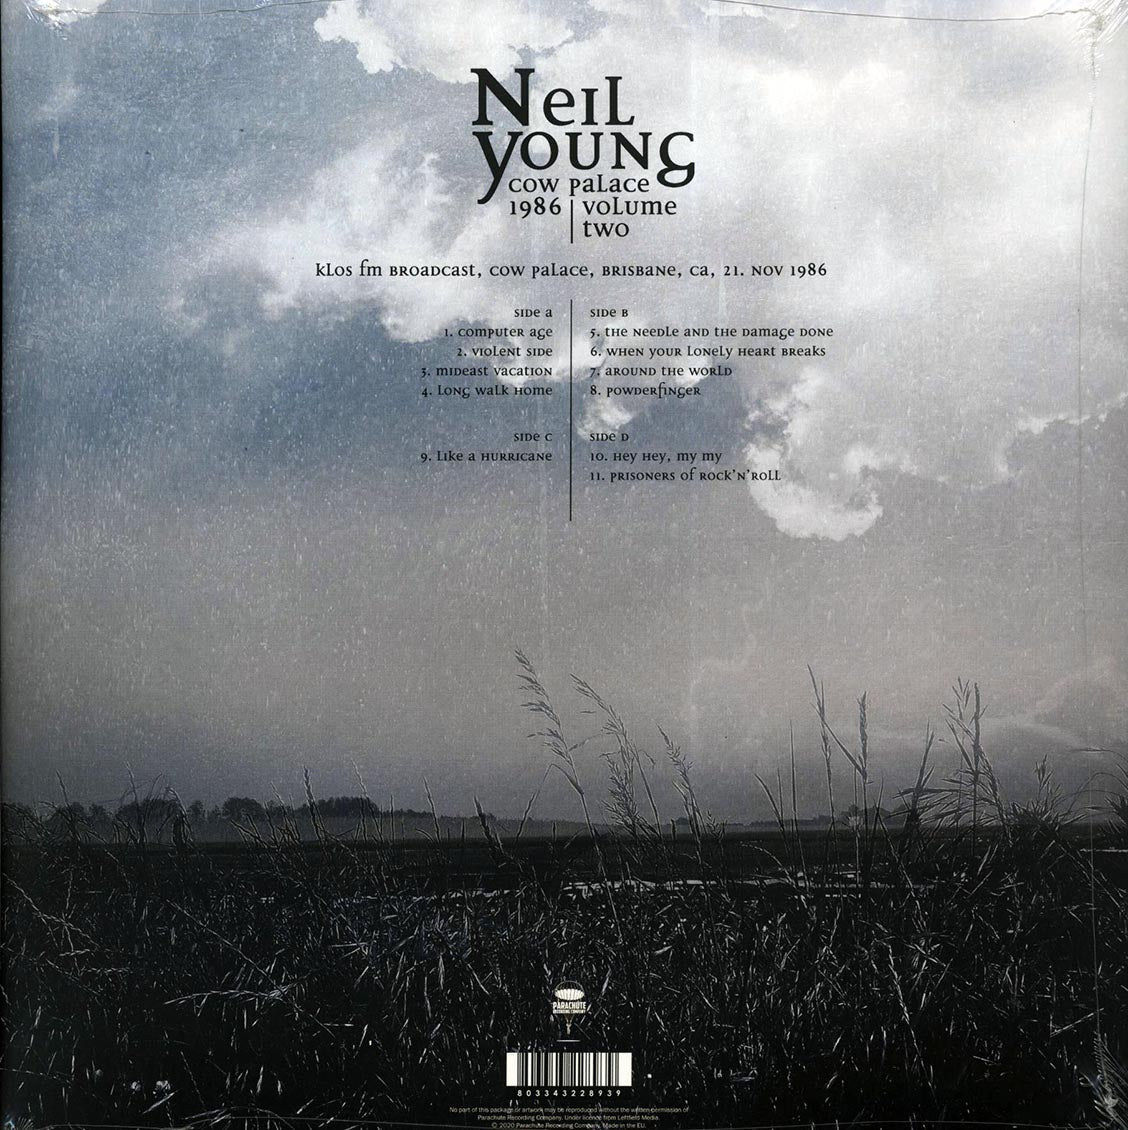 Neil Young - Cow Palace 1986 Volume 2 (ltd. ed.) (2xLP) - Vinyl LP, LP